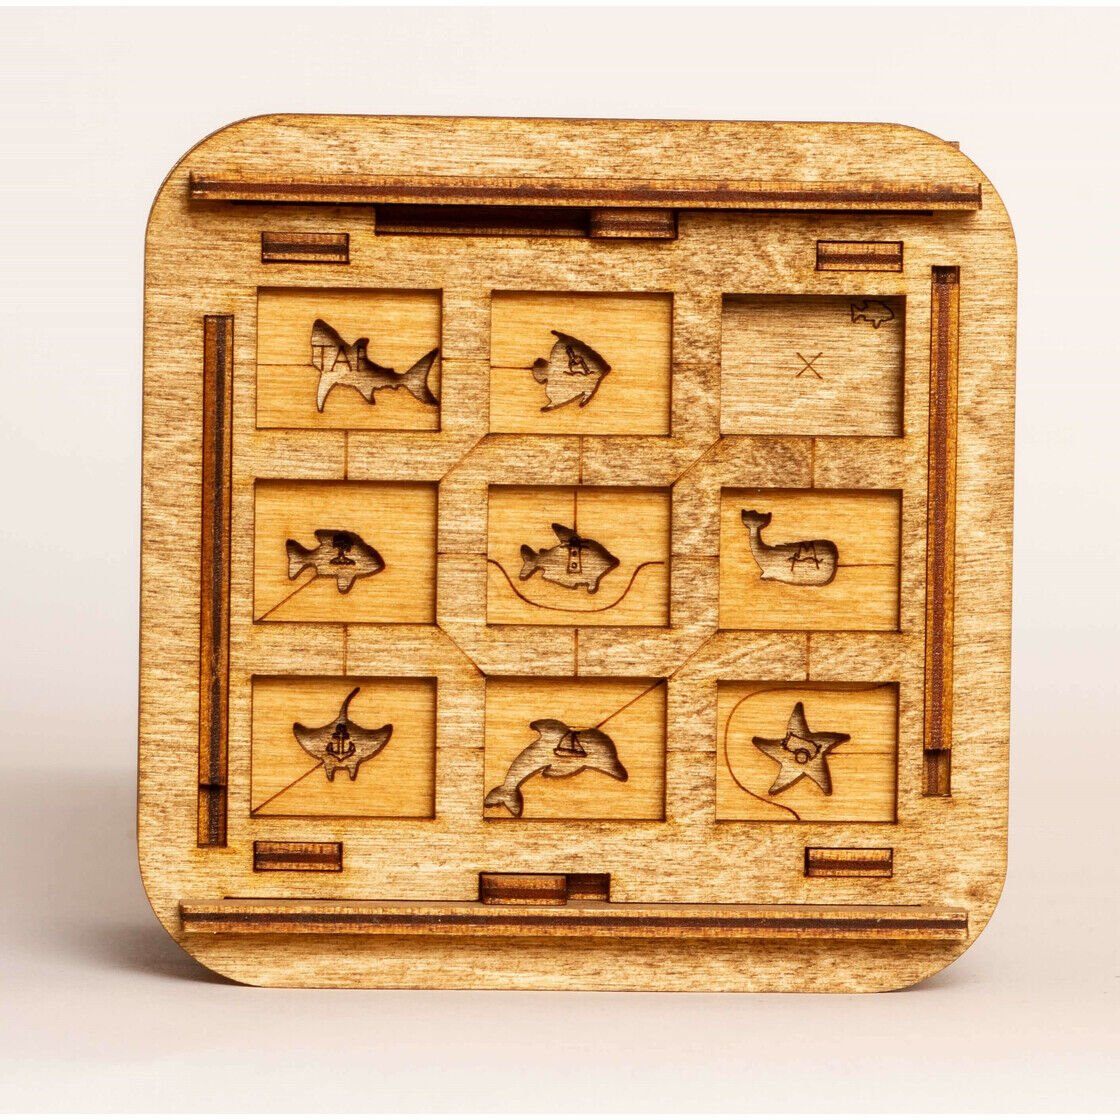  Escape Box en bois - Cluebox : Le Casier de Davy Jones.